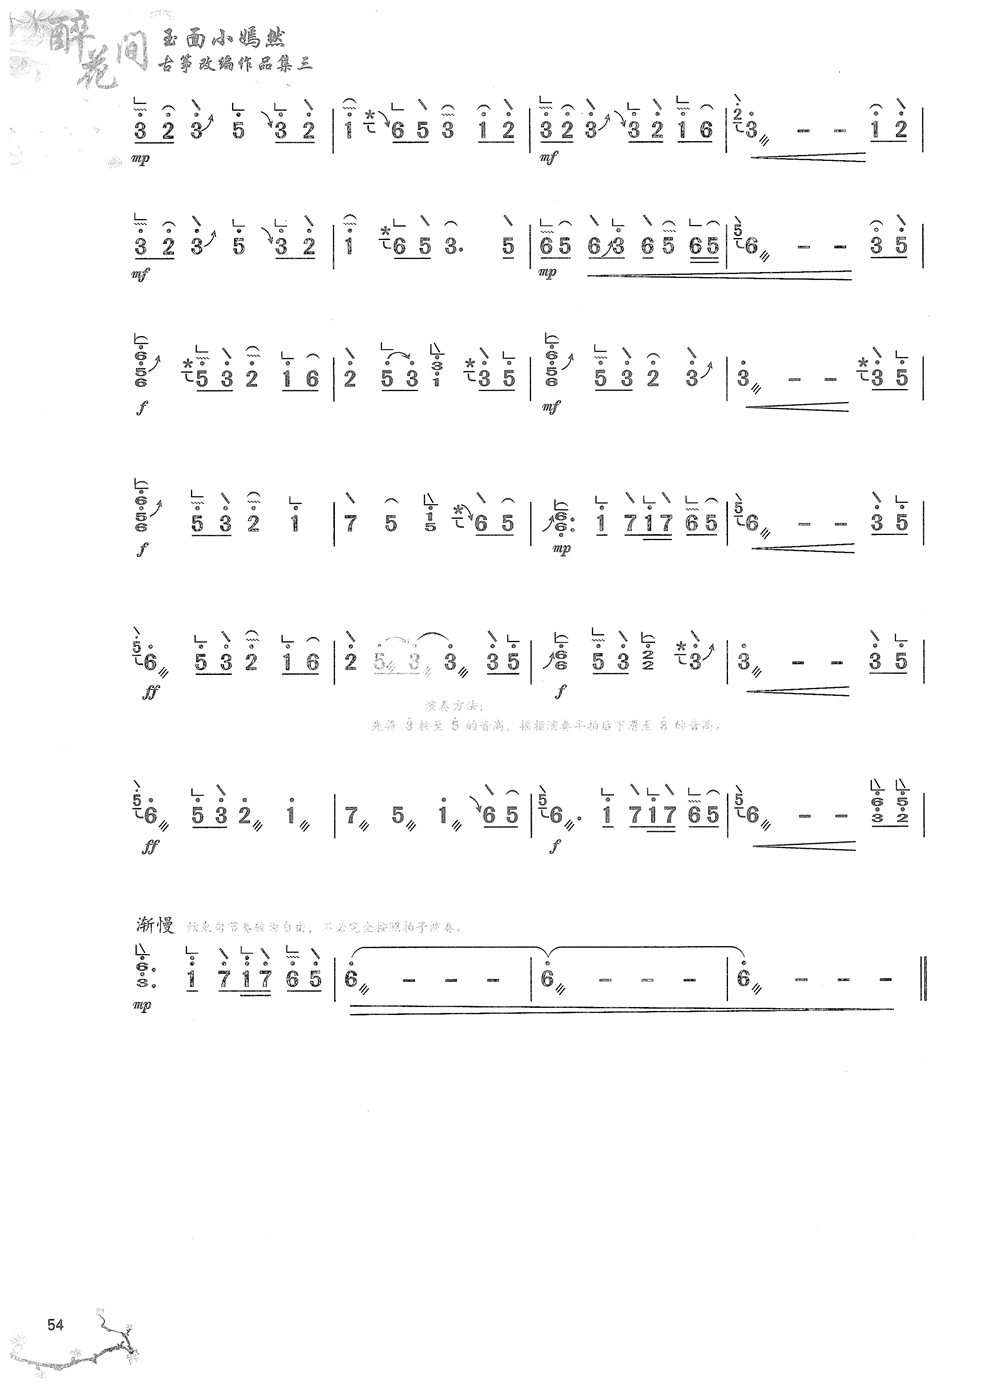 古筝曲《琴师》完整版简谱及伴奏音乐